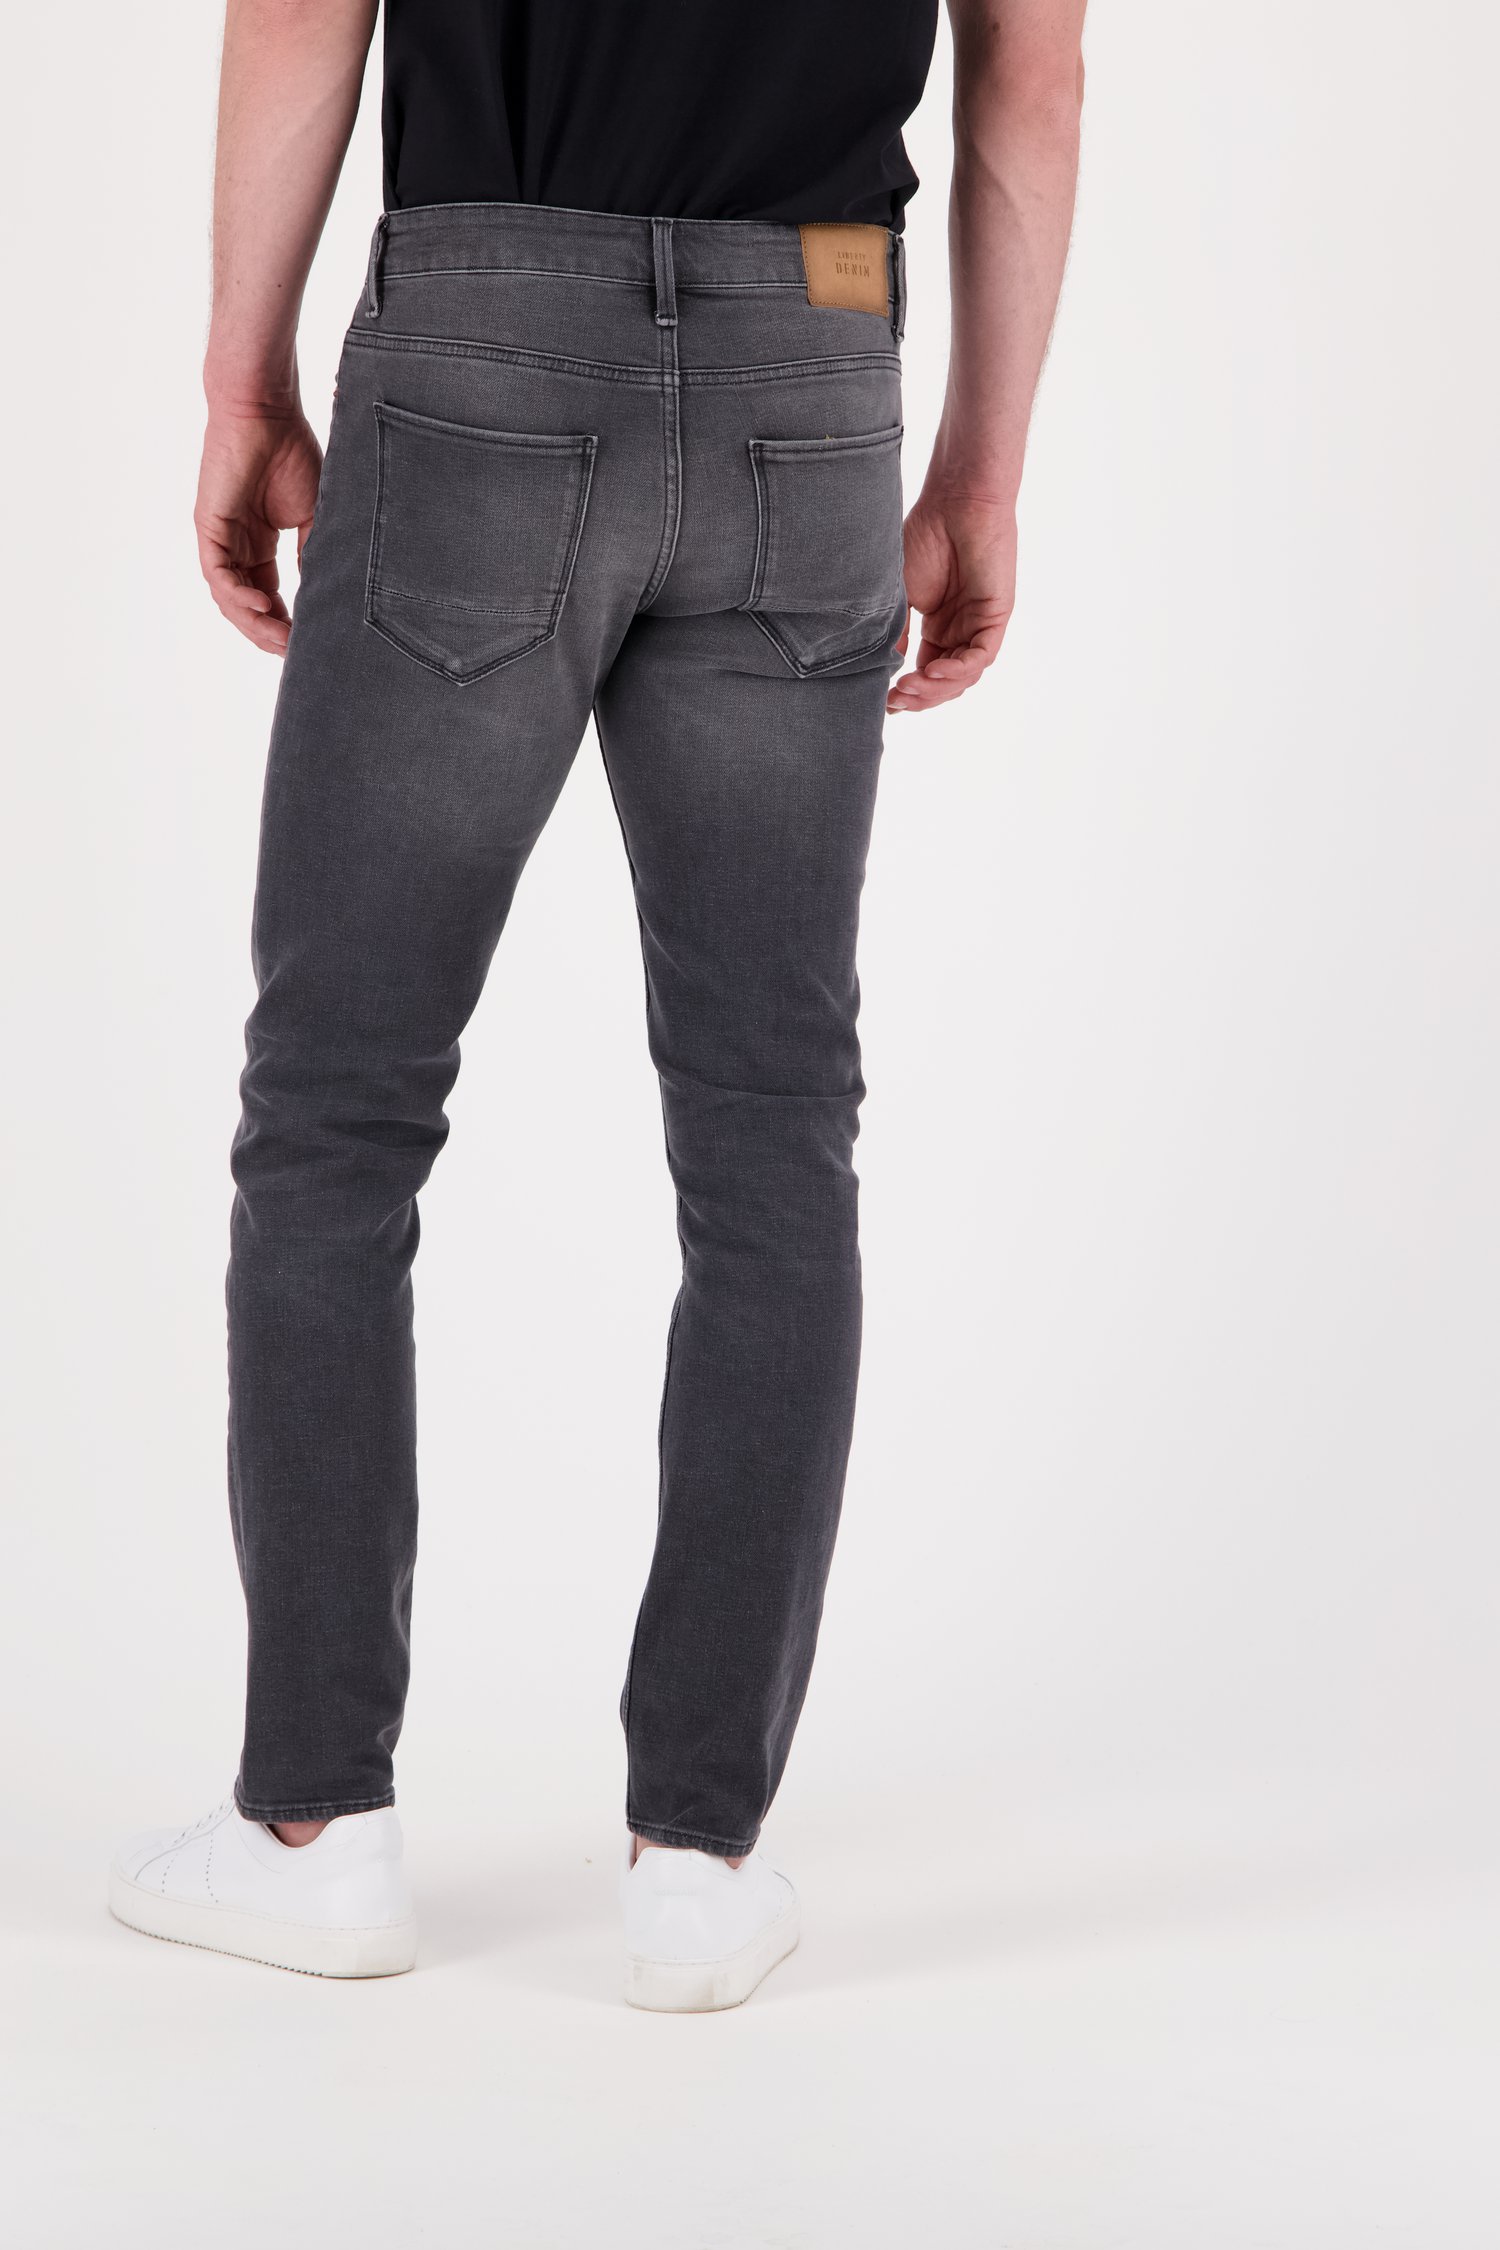 Jeans gris - Tim – slim fit - L32  de Liberty Island Denim pour Hommes